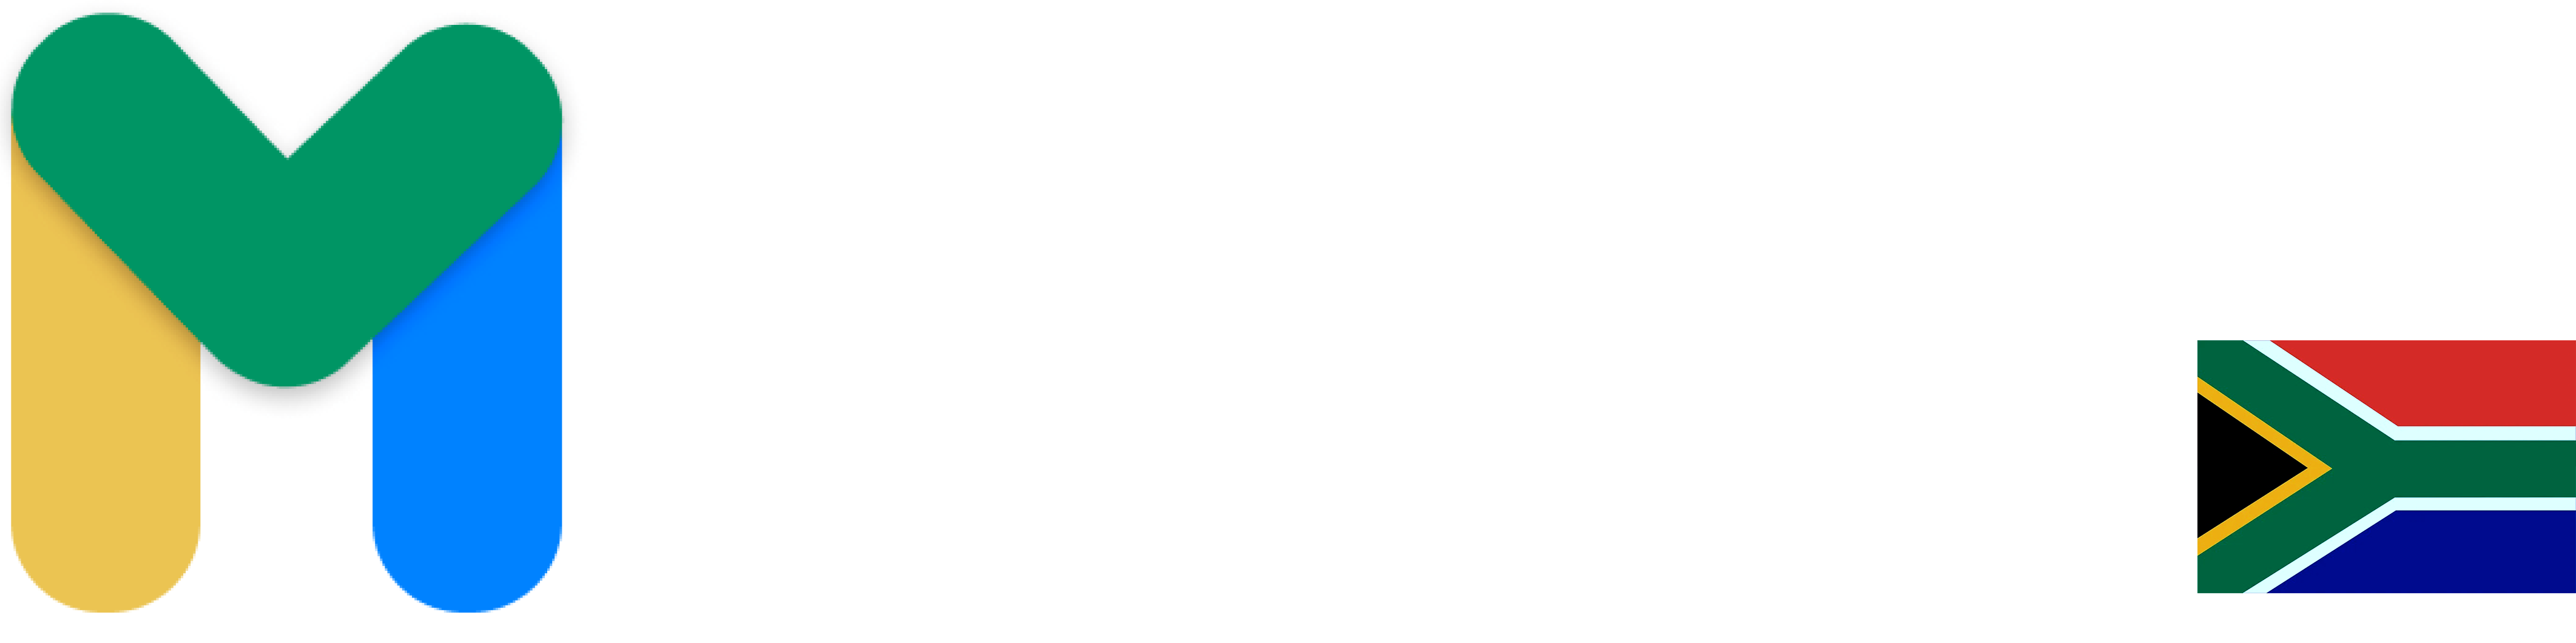 Mobiloitte_logo